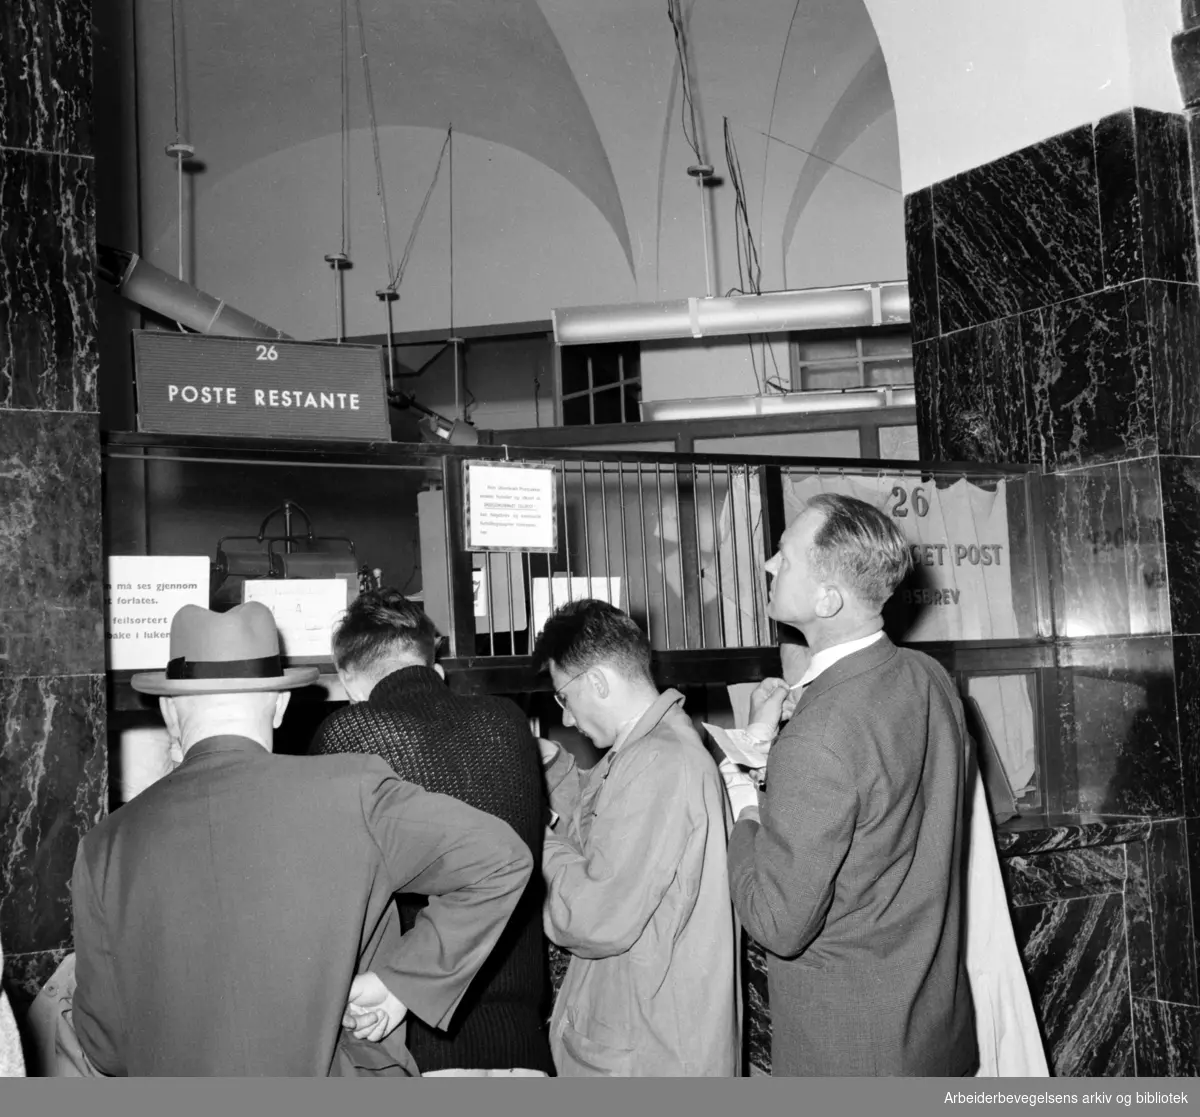 Posthuset. "Poste restante luken". Juli 1957